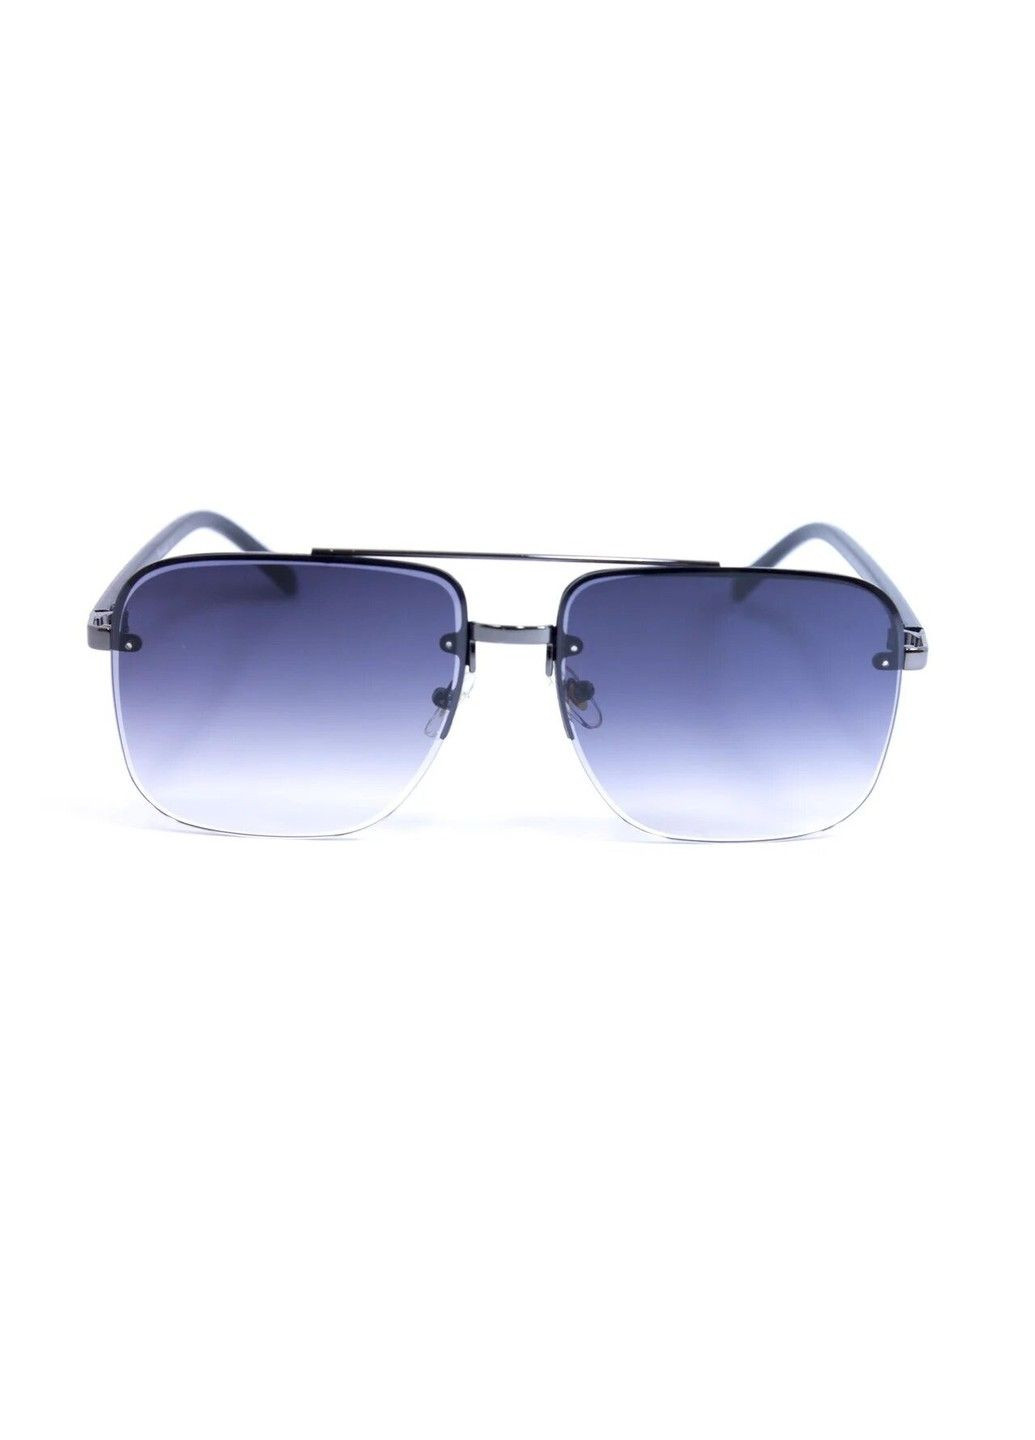 Cолнцезащитные женские очки 0361-1 BR-S (291984107)